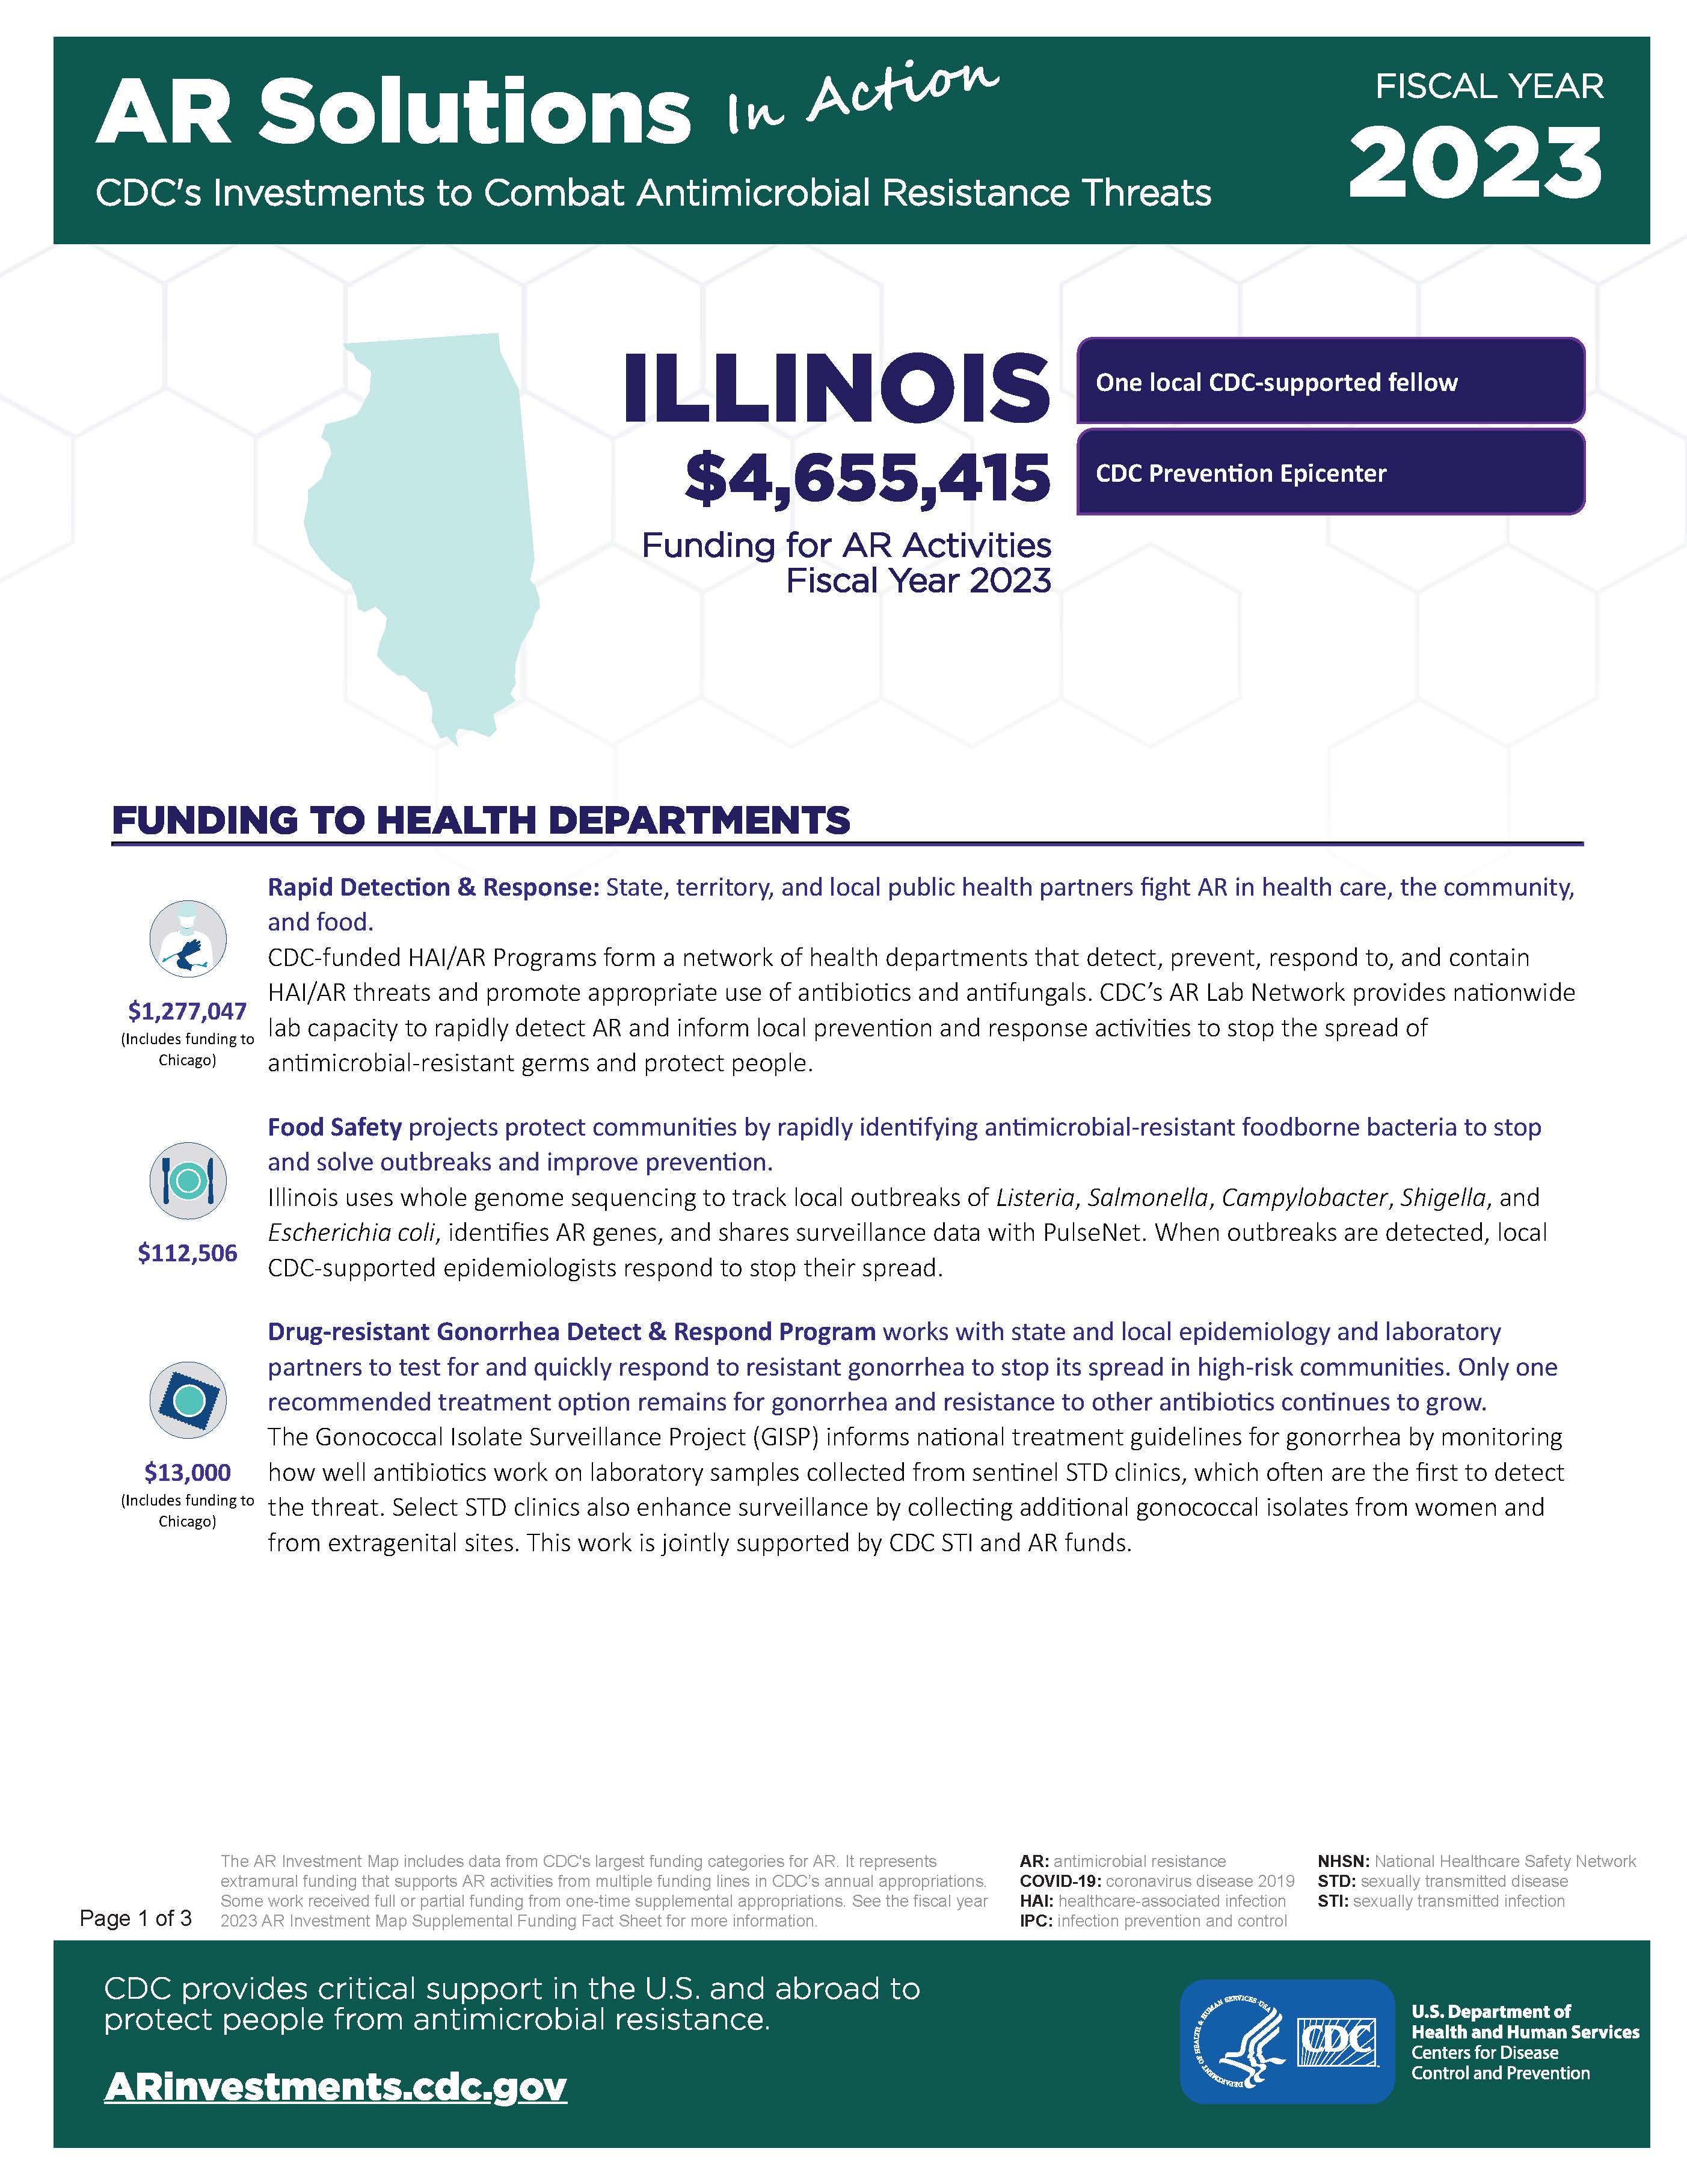 View Factsheet for Illinois